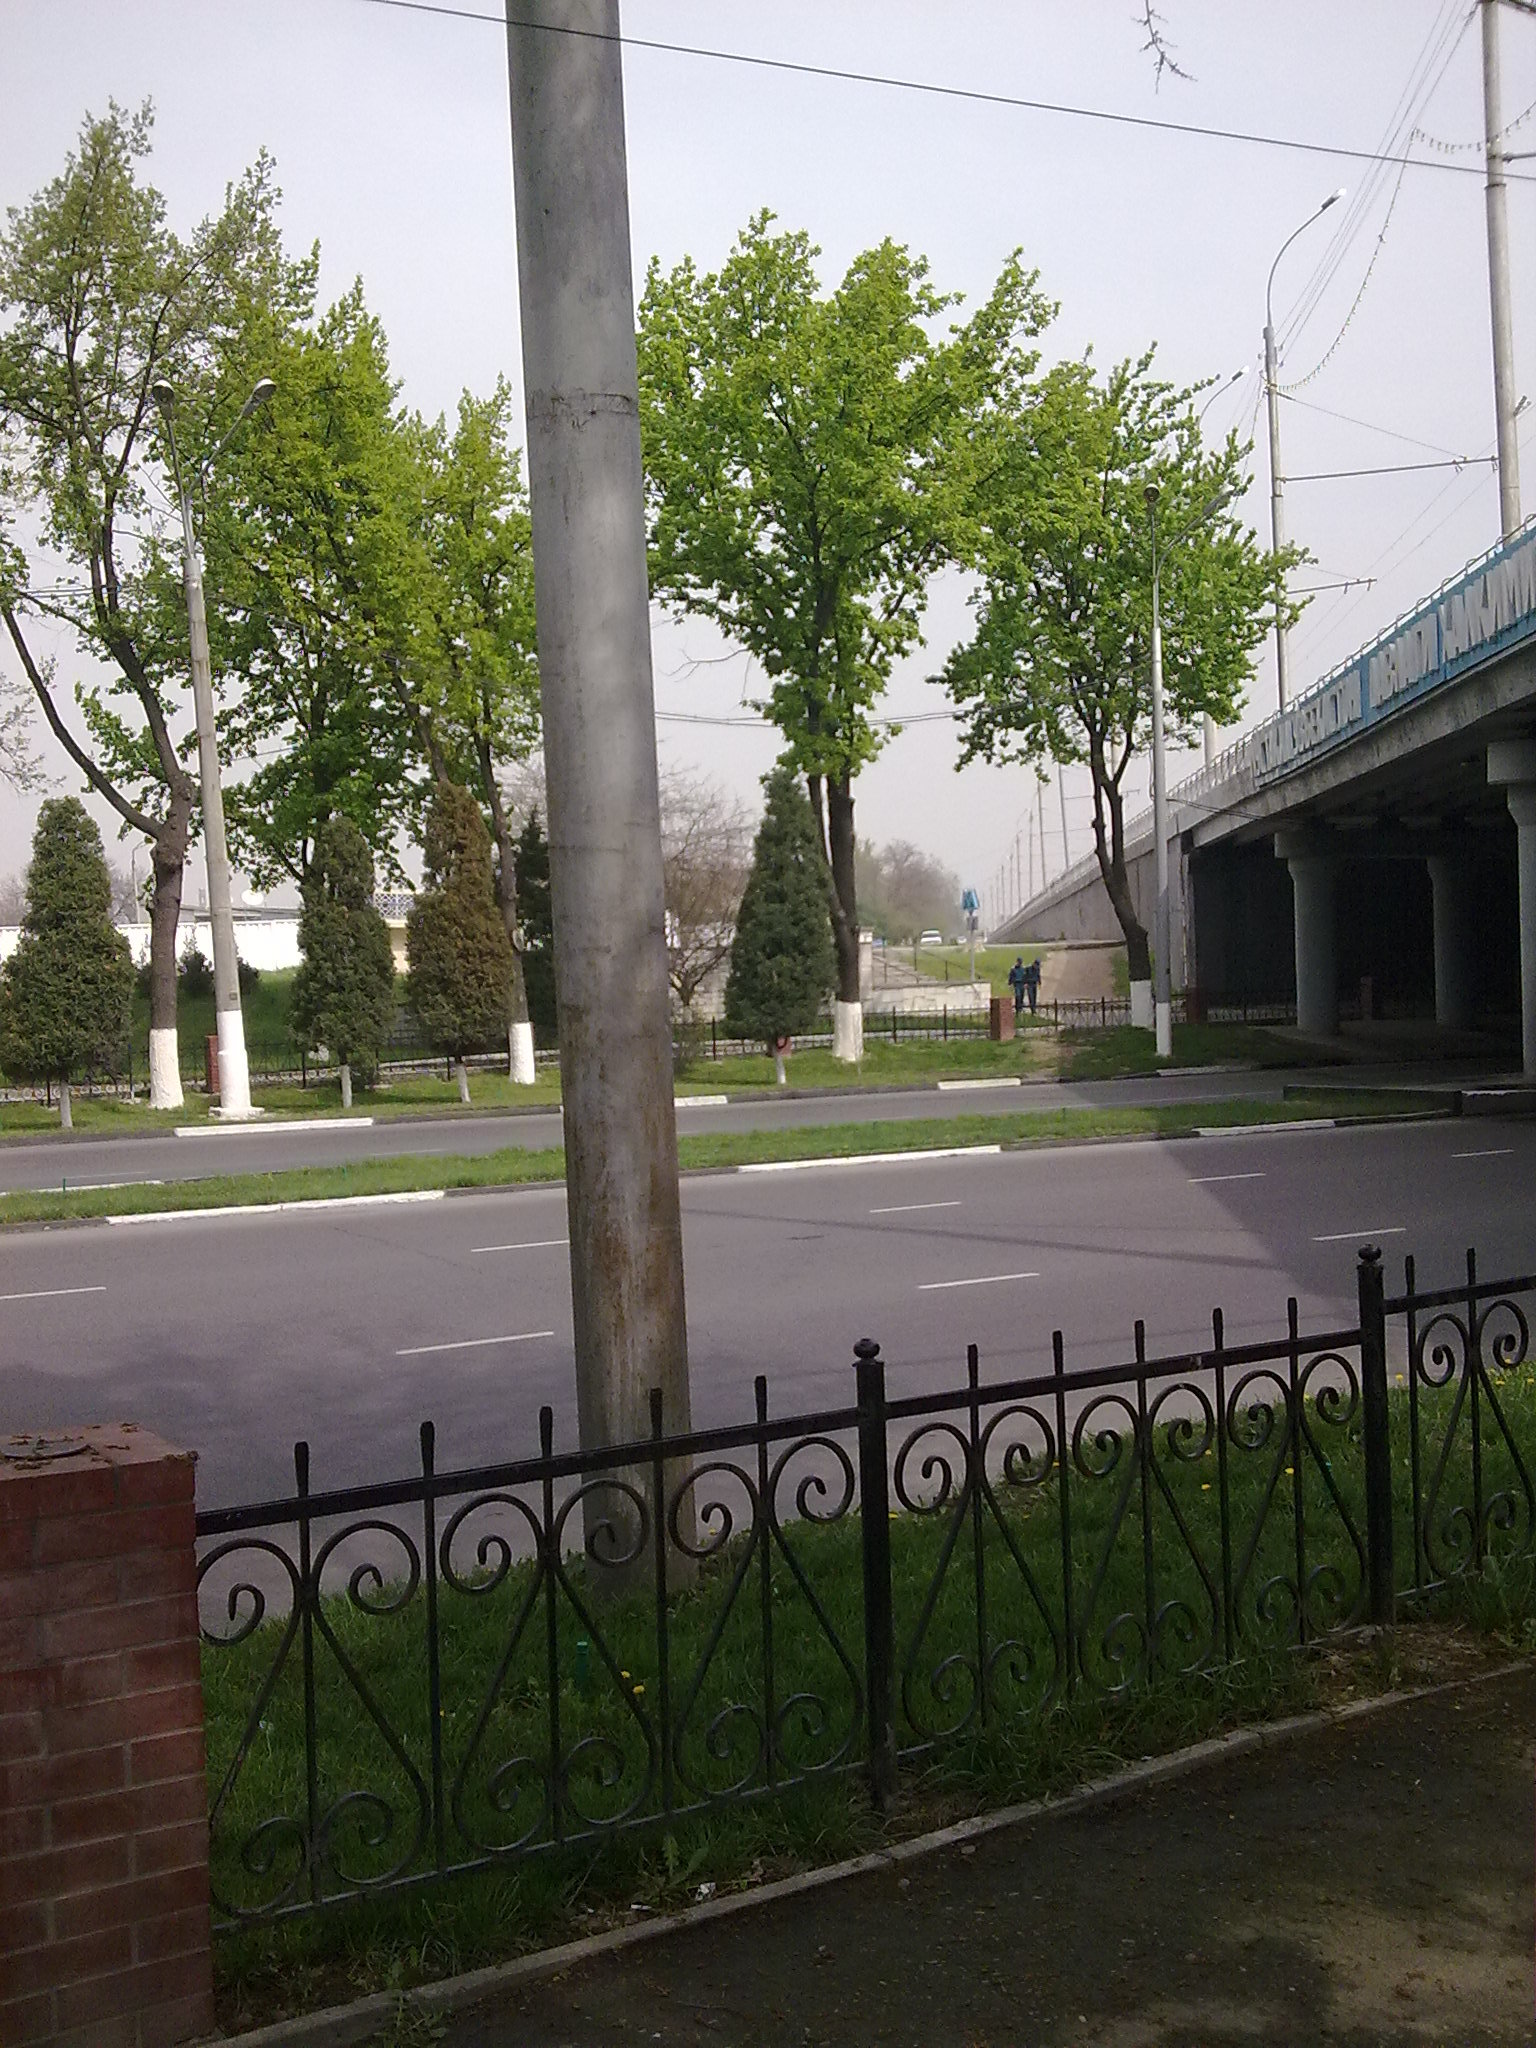 Ташкент сеть. Ташкент дорога. Ташкент сейчас. Школа 1020 на Ташкентской. Ташкент сейчас фото.